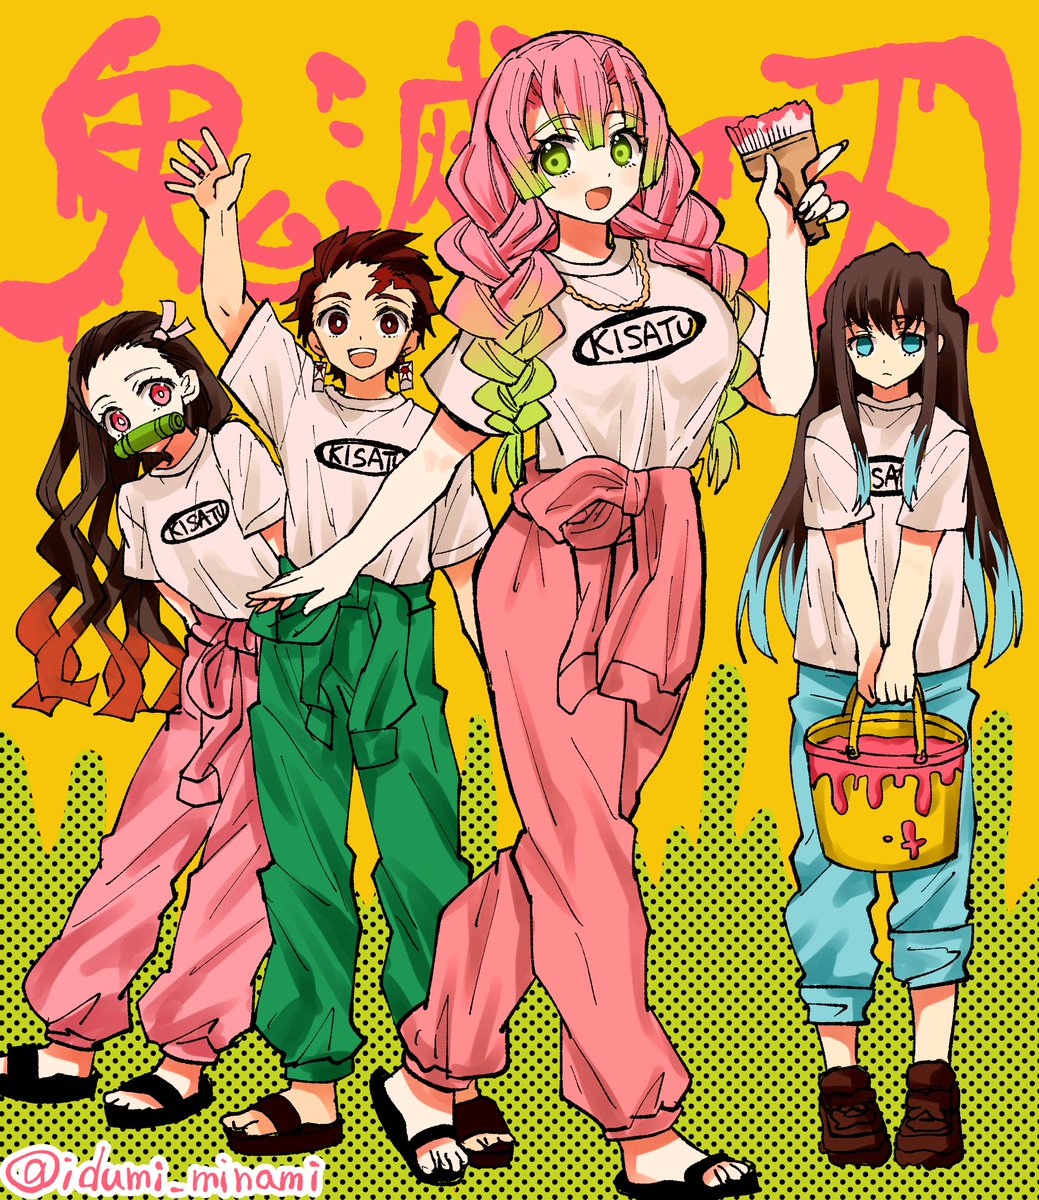 kamado nezuko ,kamado tanjirou ,kanroji mitsuri multiple girls 2girls pink hair shirt scar white shirt long hair  illustration images